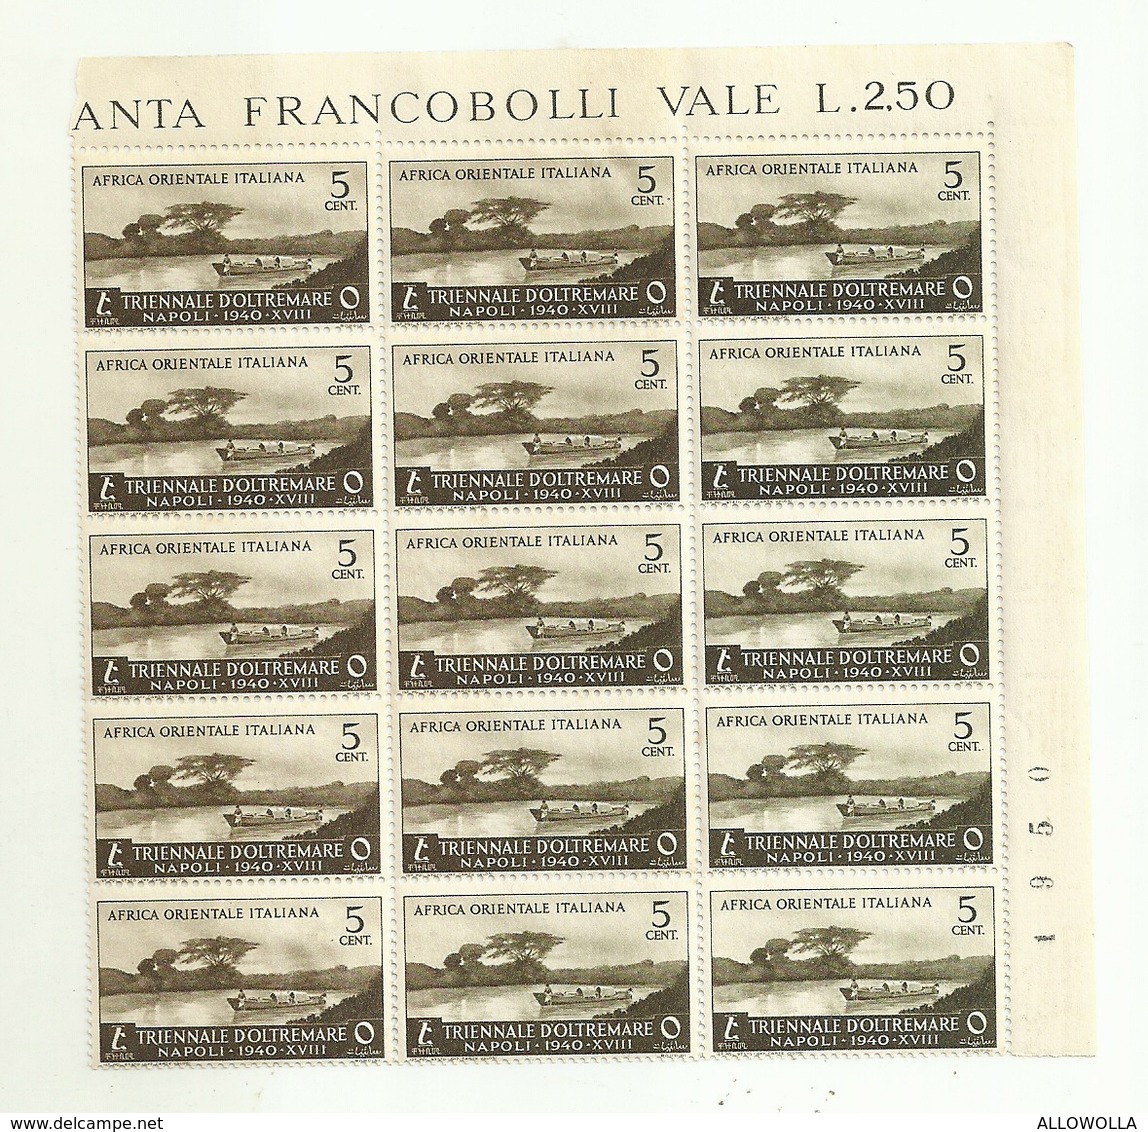 7145 "ITALIA COLONIA AFRICA ORIENTALE ITALIANA-I MOSTRA TRIENNALE DELLE TERRE D'OLTREMARE-1940-NUOVO-FOGL. 15 ESEMPL." - Eastern Africa